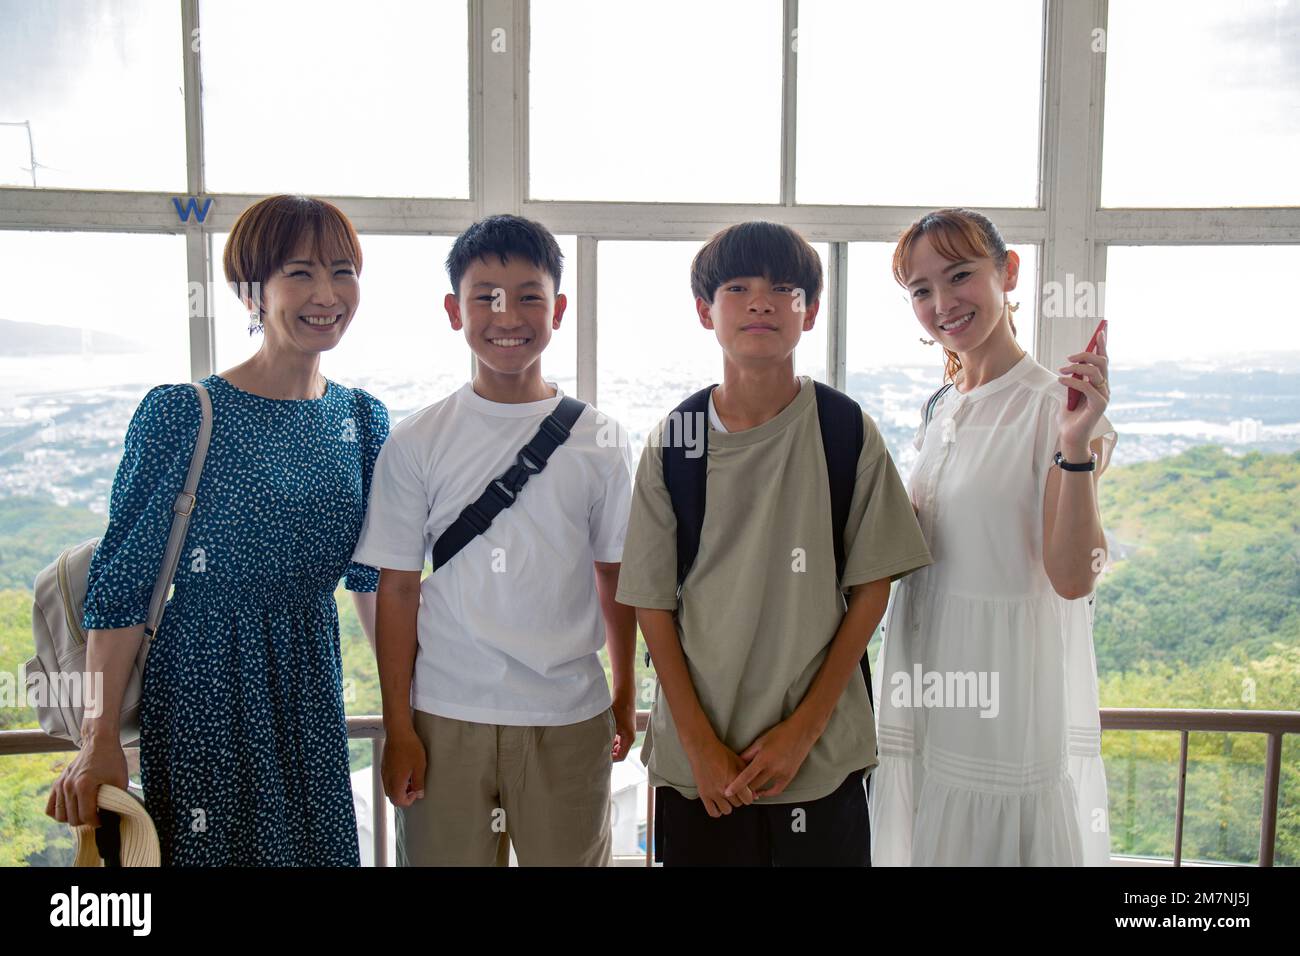 Quattro giapponesi, due ragazzi e due donne mature in una giornata fuori, in posa per una fotografia, fianco a fianco, su una piattaforma di osservazione. Foto Stock